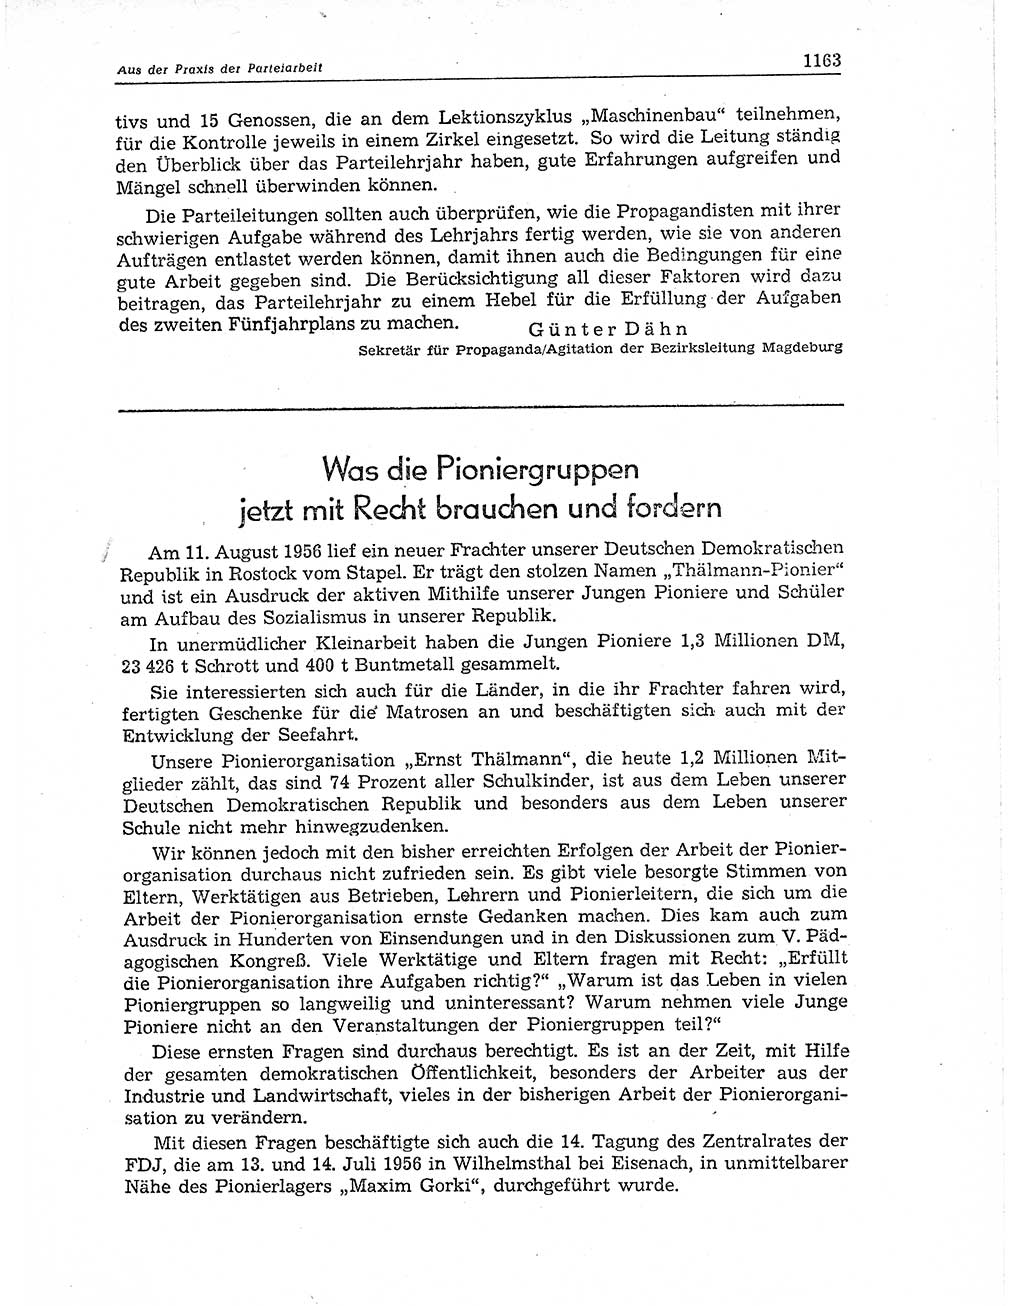 Neuer Weg (NW), Organ des Zentralkomitees (ZK) der SED (Sozialistische Einheitspartei Deutschlands) für Fragen des Parteiaufbaus und des Parteilebens, 11. Jahrgang [Deutsche Demokratische Republik (DDR)] 1956, Seite 1163 (NW ZK SED DDR 1956, S. 1163)